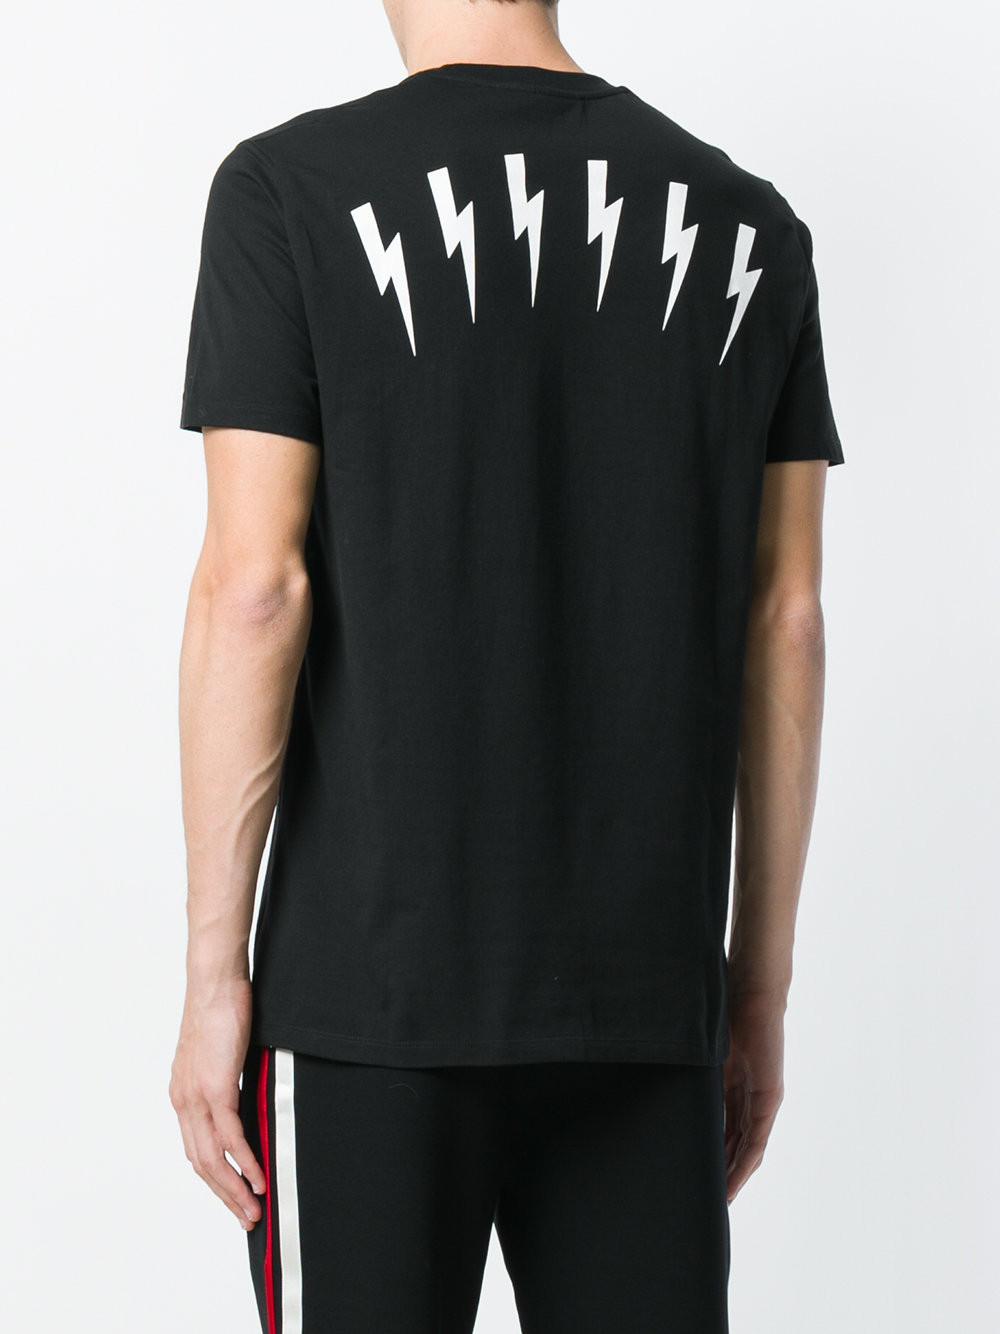 Neil Barrett Cotton Lightning Bolt T-shirt in Black for Men - Lyst